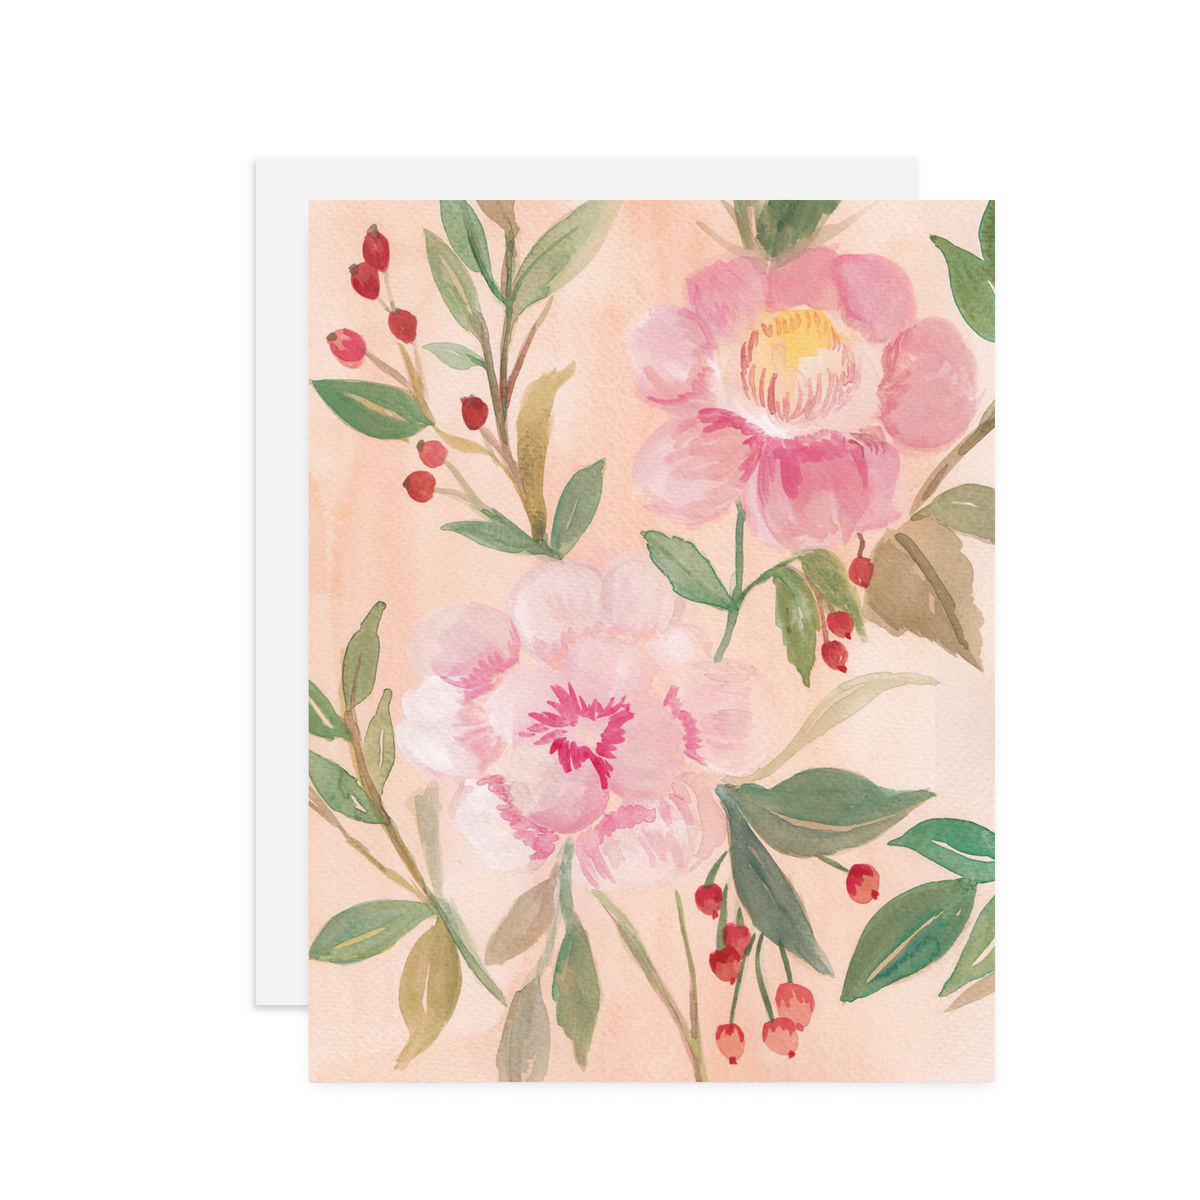 Peach Blooms - A2 note card